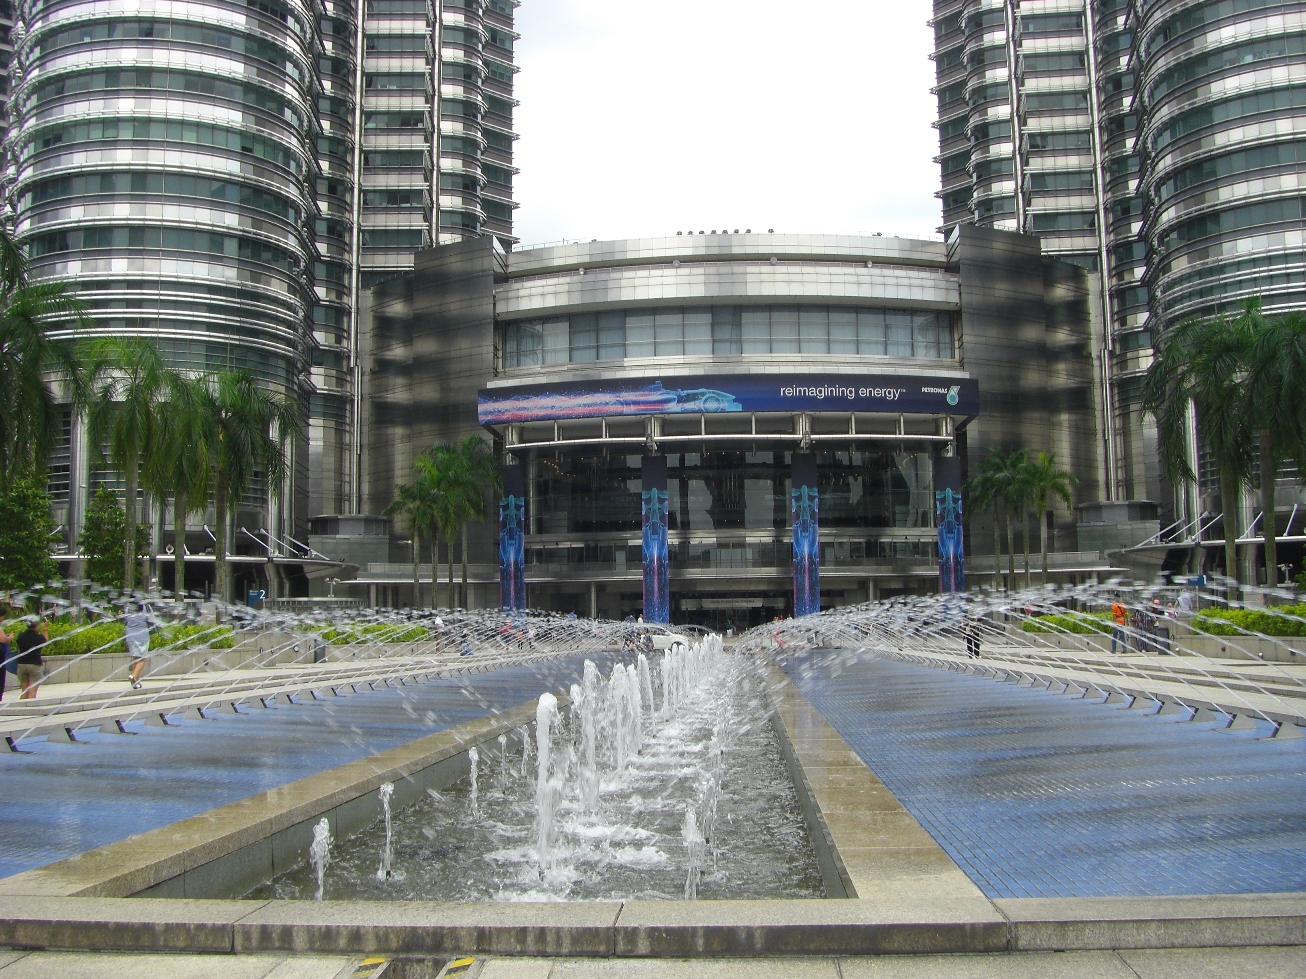 Petronas Towers 1